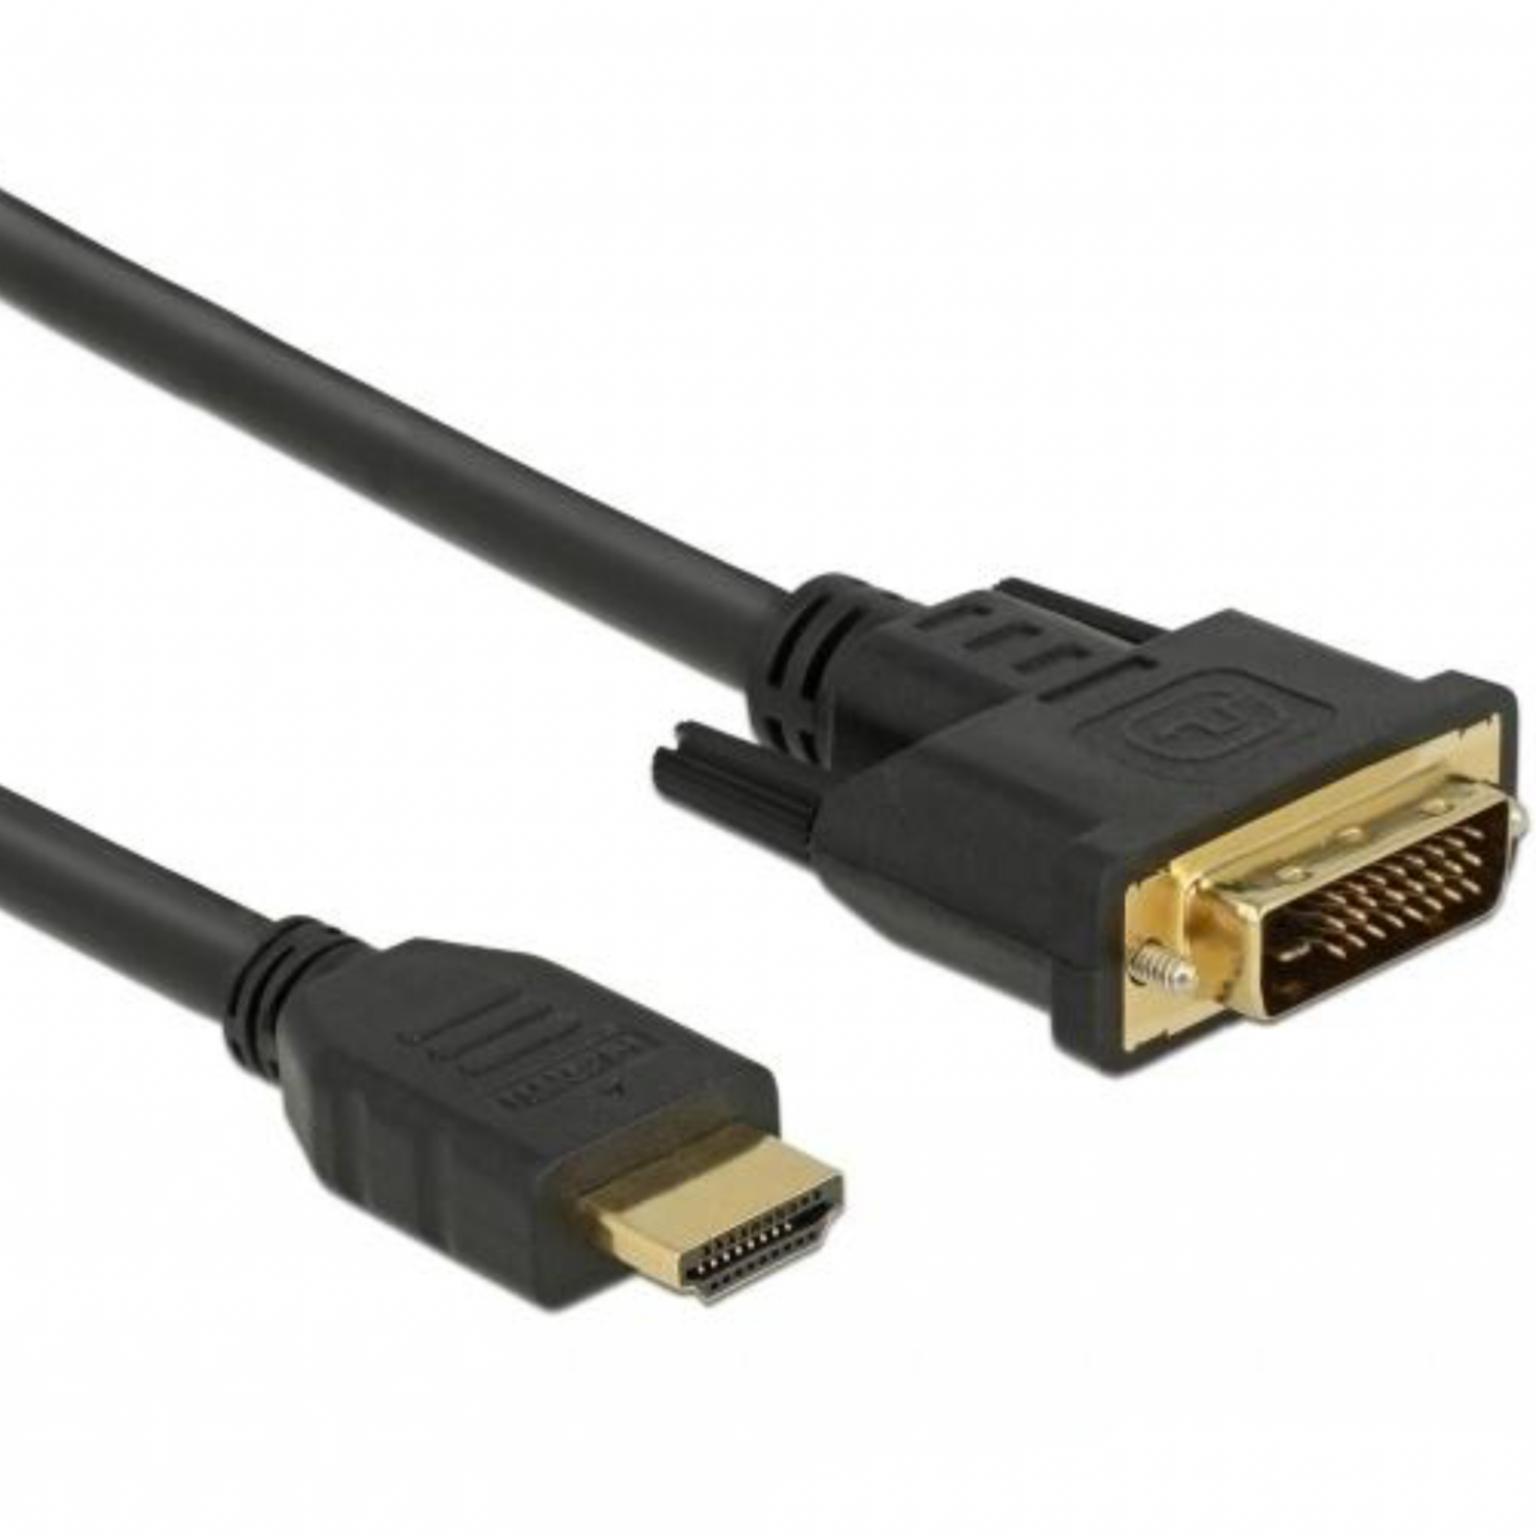 Câble DVI-D vers HDMI - Version : Dual link (24+1 broches), Connecteur 1 :  DVI-D mâle, Connecteur 2 : HDMI mâle, Plaqué or : Oui, Longueur : 1,5  mètres.